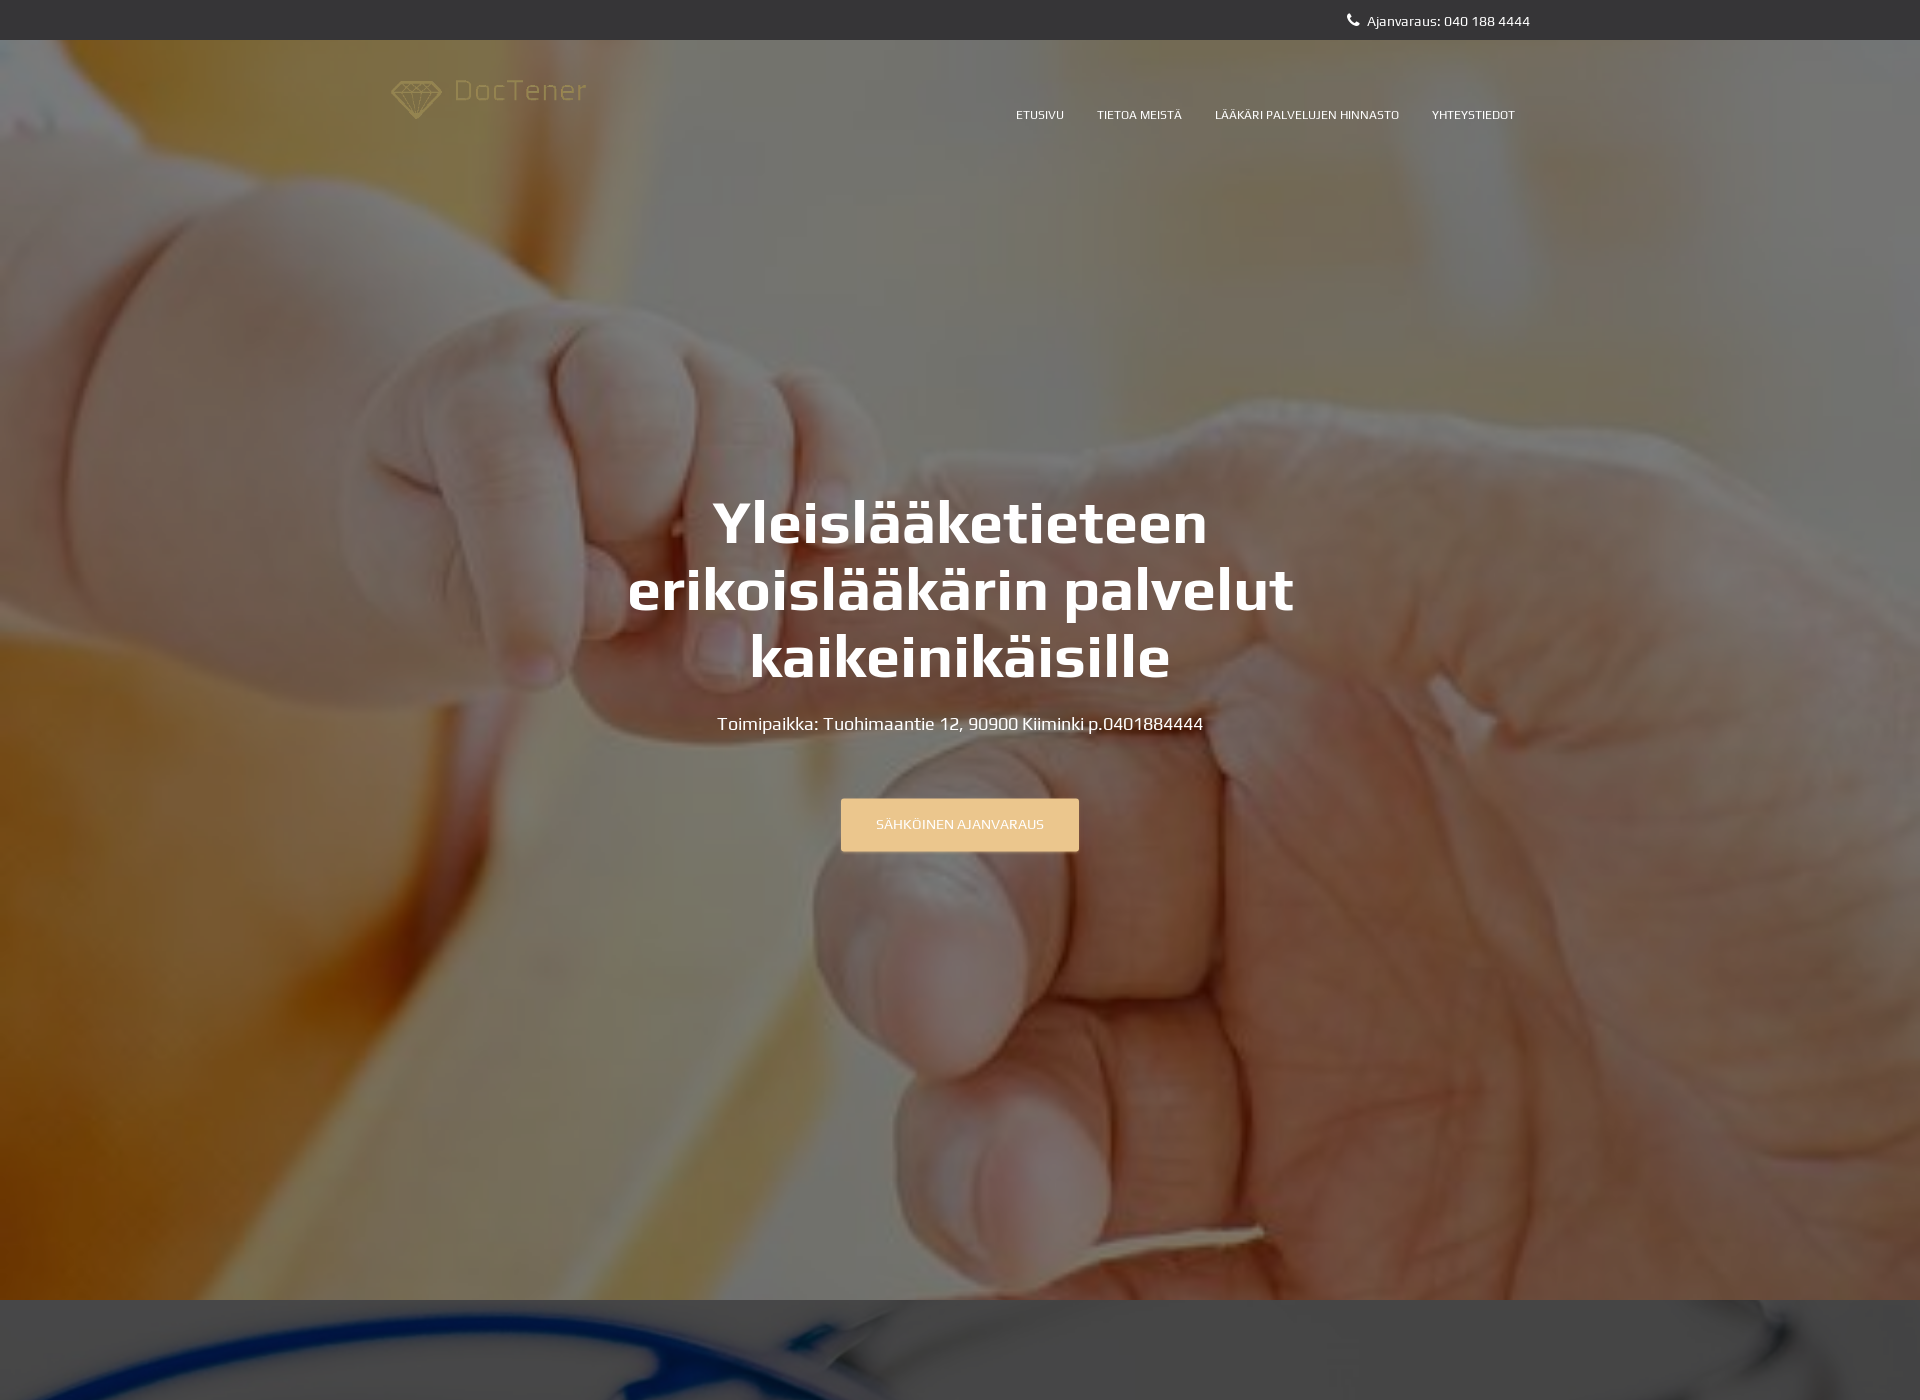 Screenshot for doctener.fi